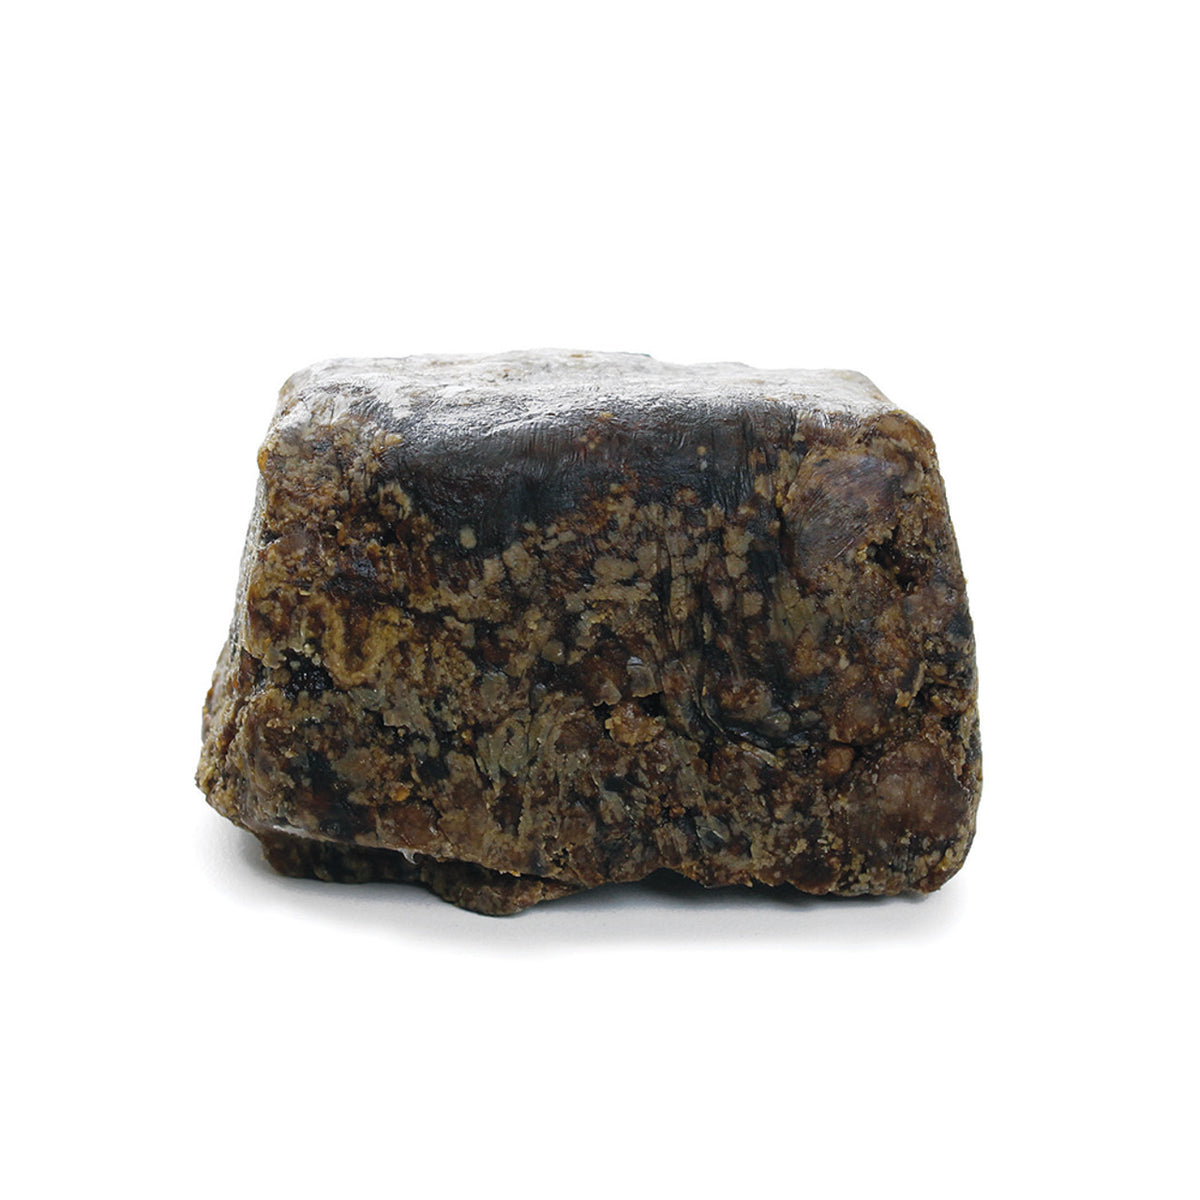 Raw Natural Black Soap Bar - 8 oz.